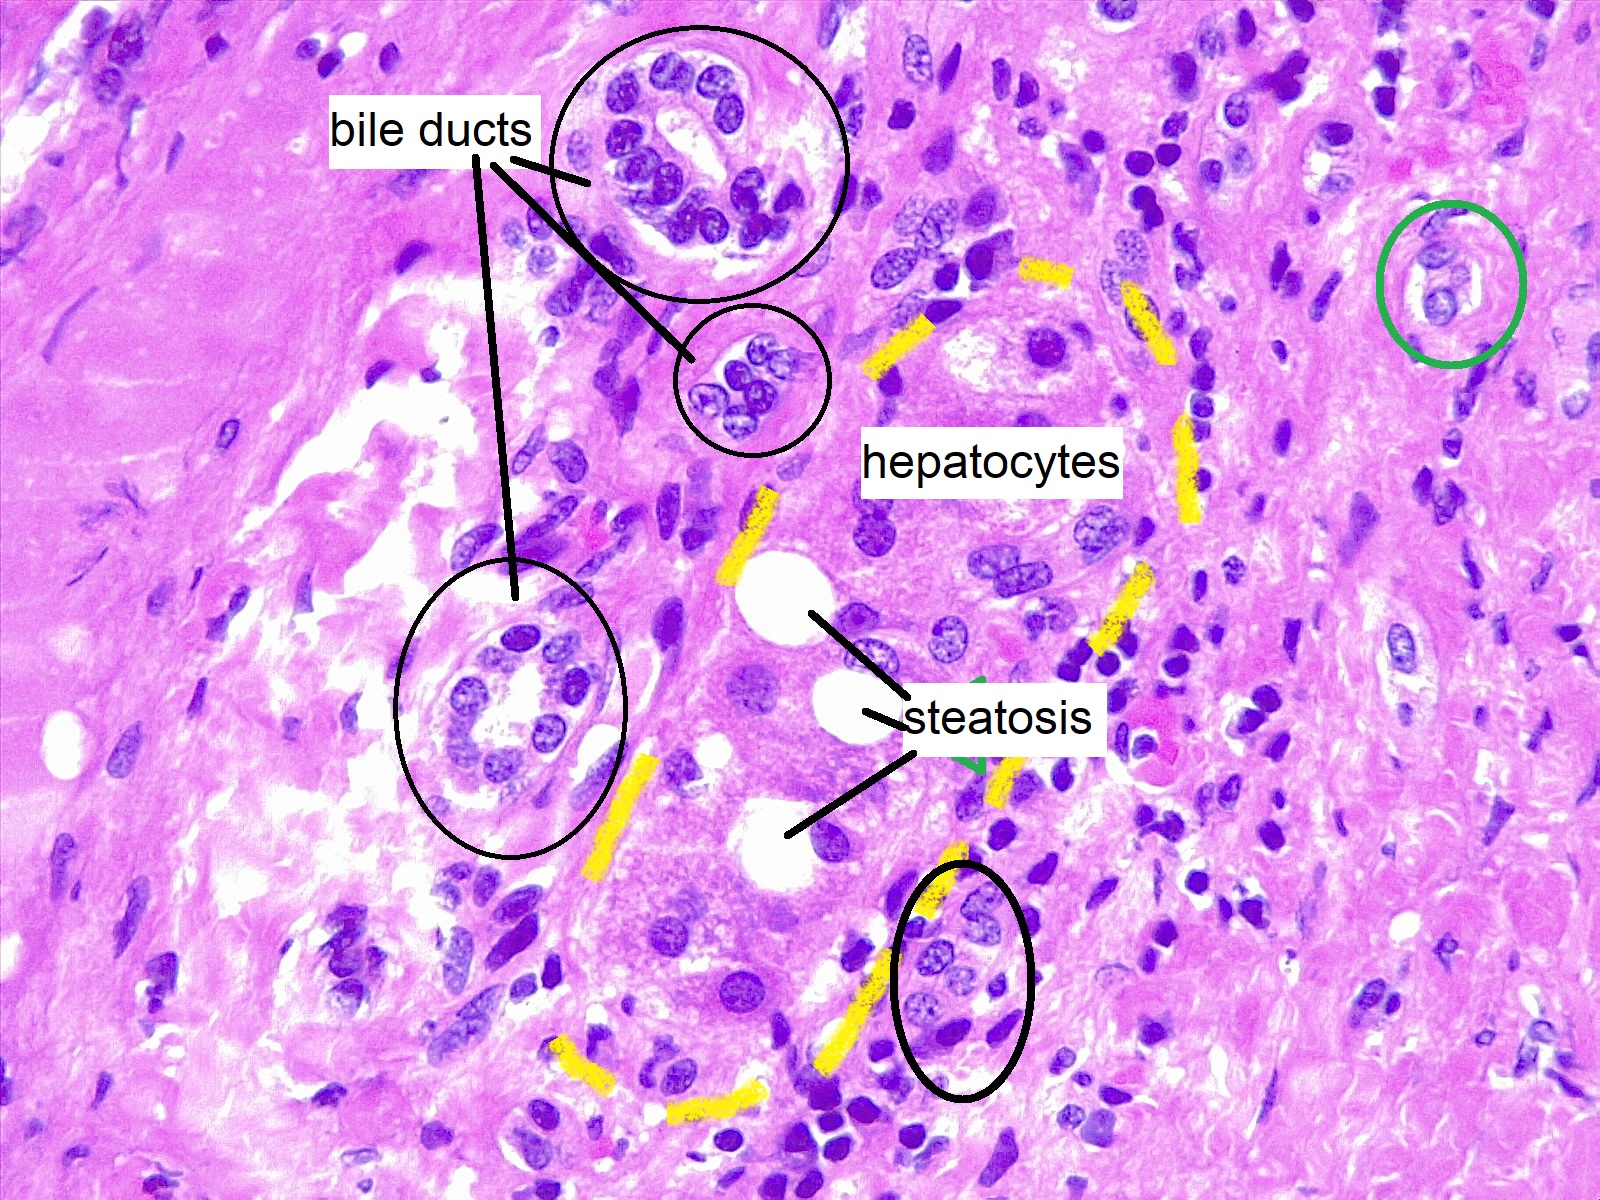 Liver biopsy, hepatic steatosis